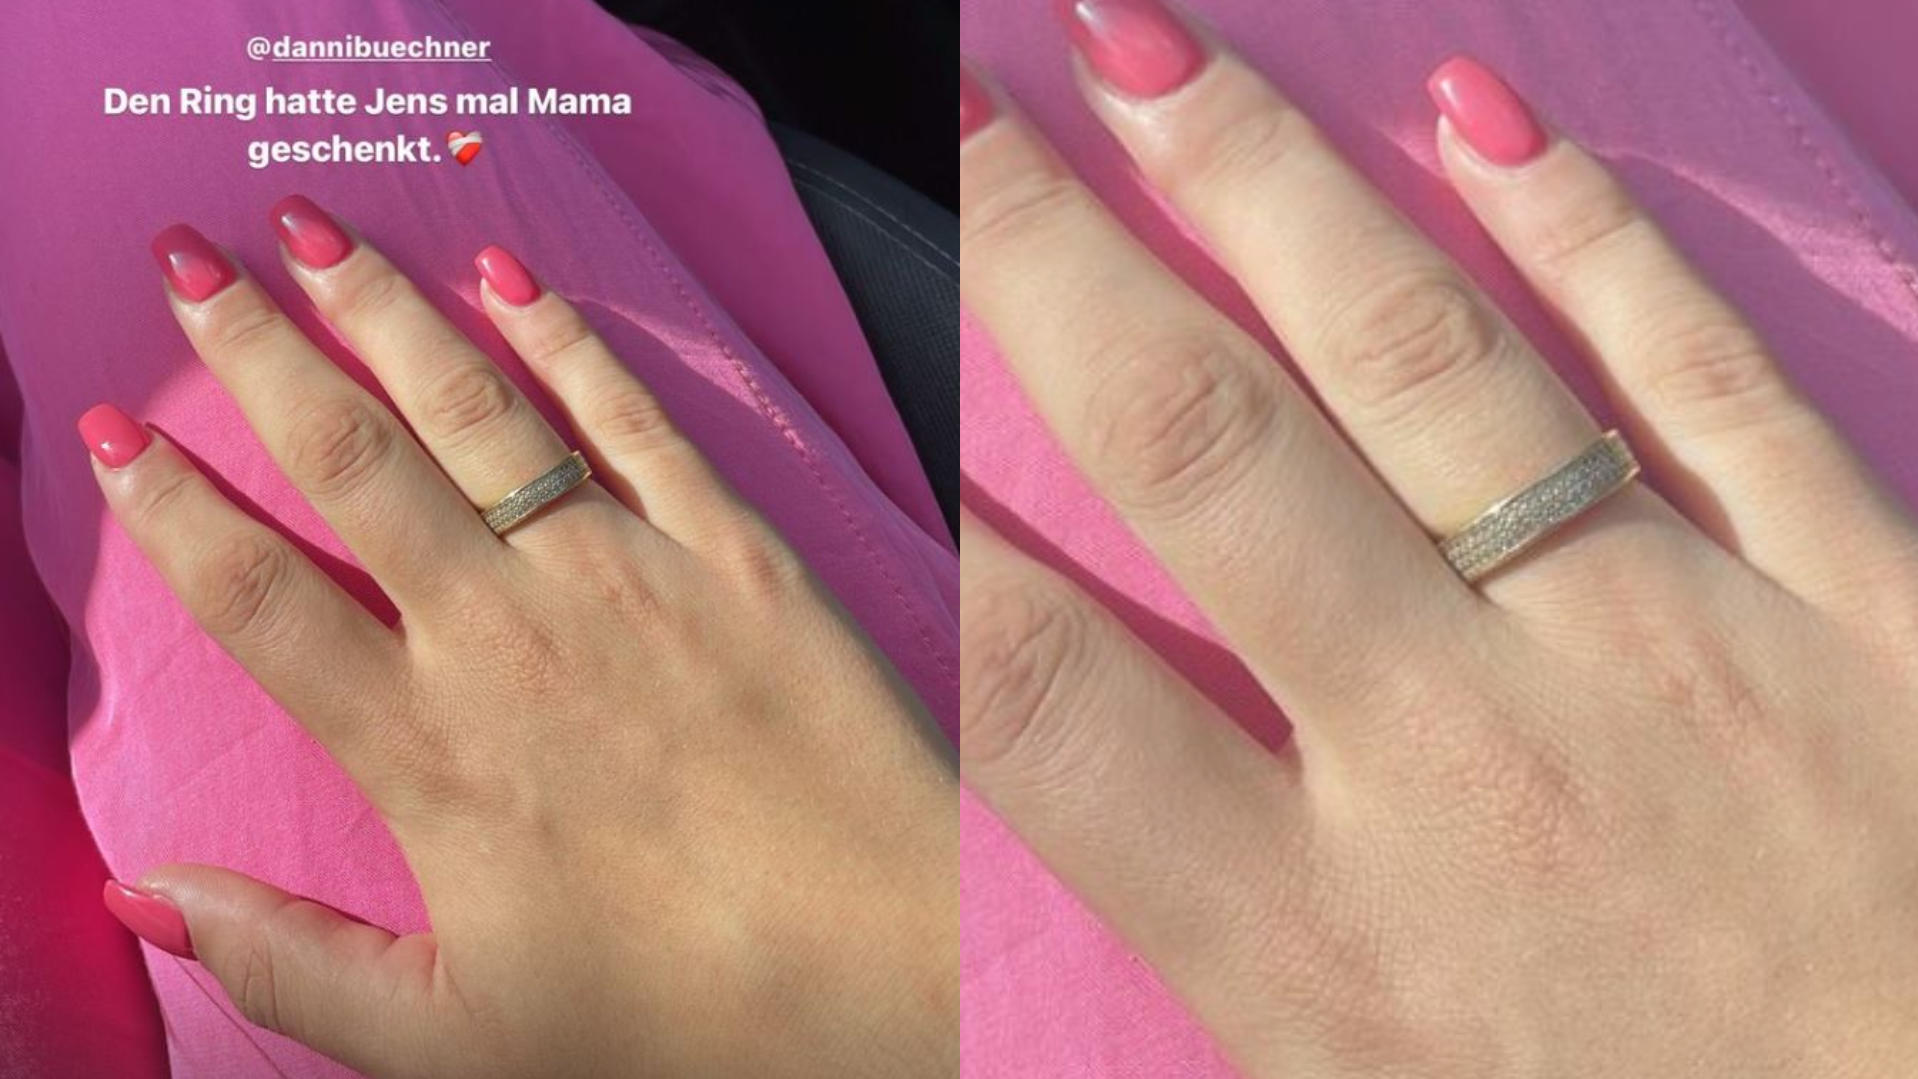 Jada Karabas trägt besonderen Ring ihrer Mutter Danni Büchner